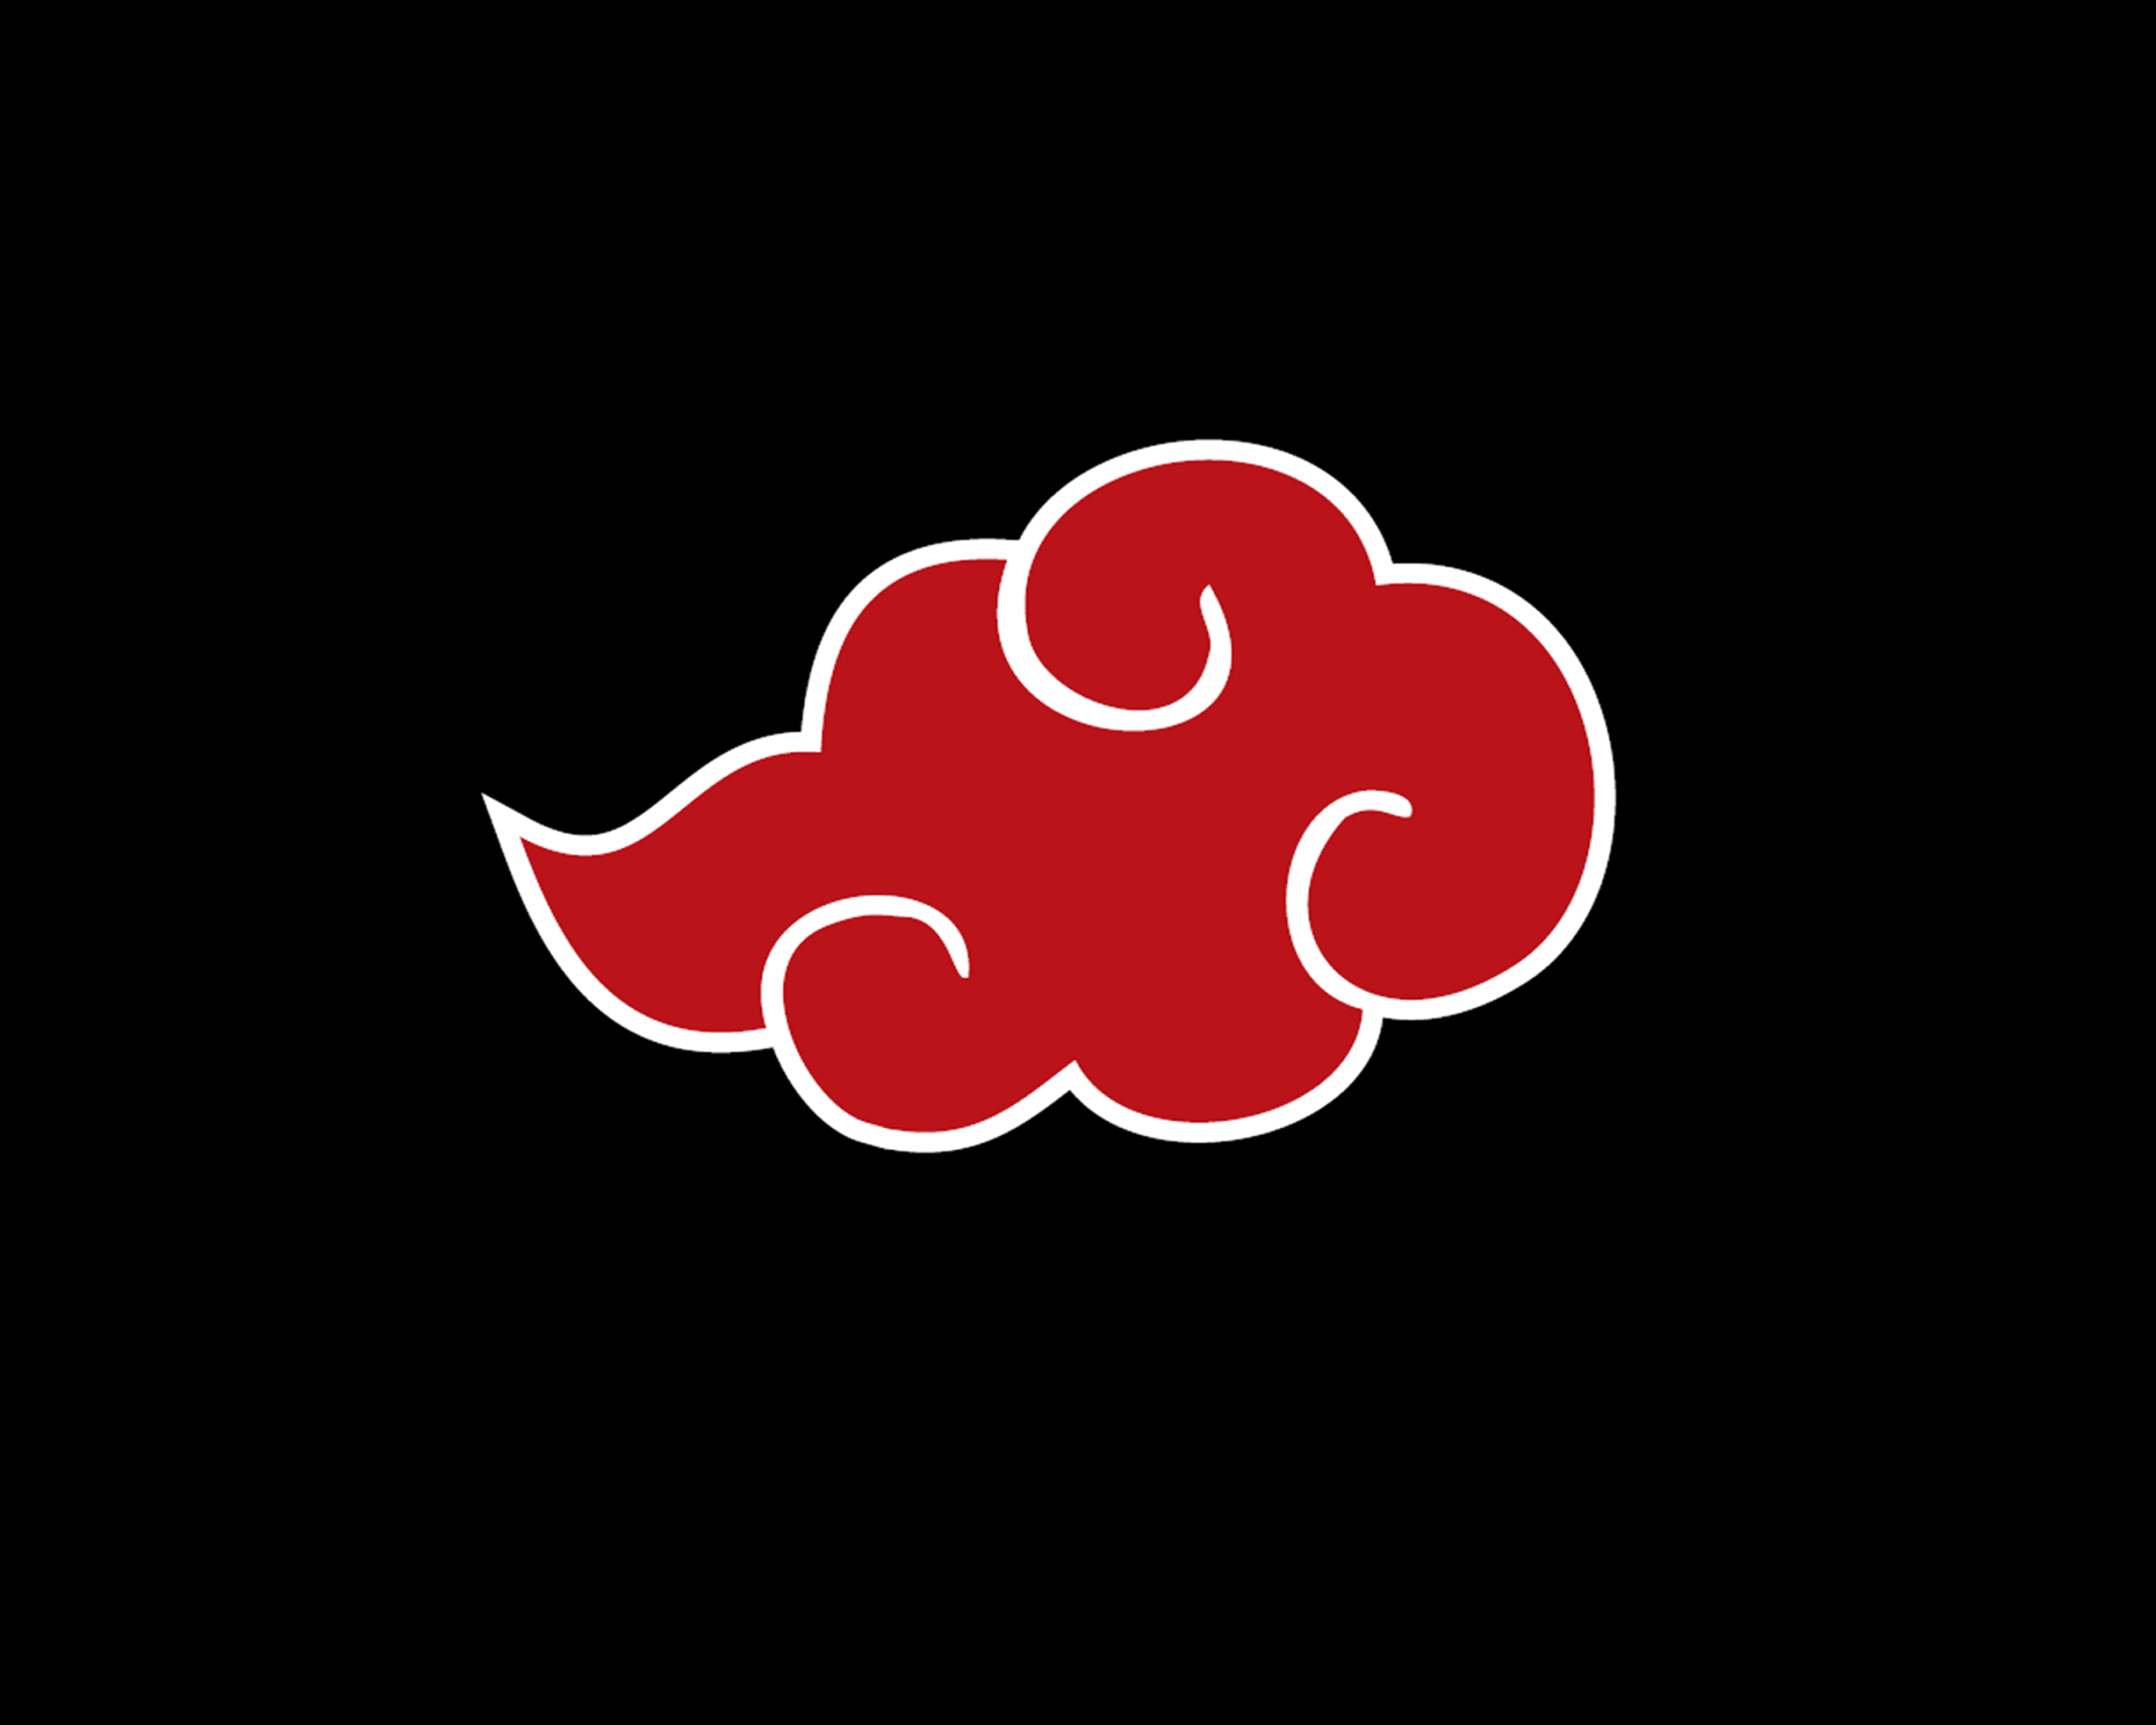 Anime Logo Wallpaper